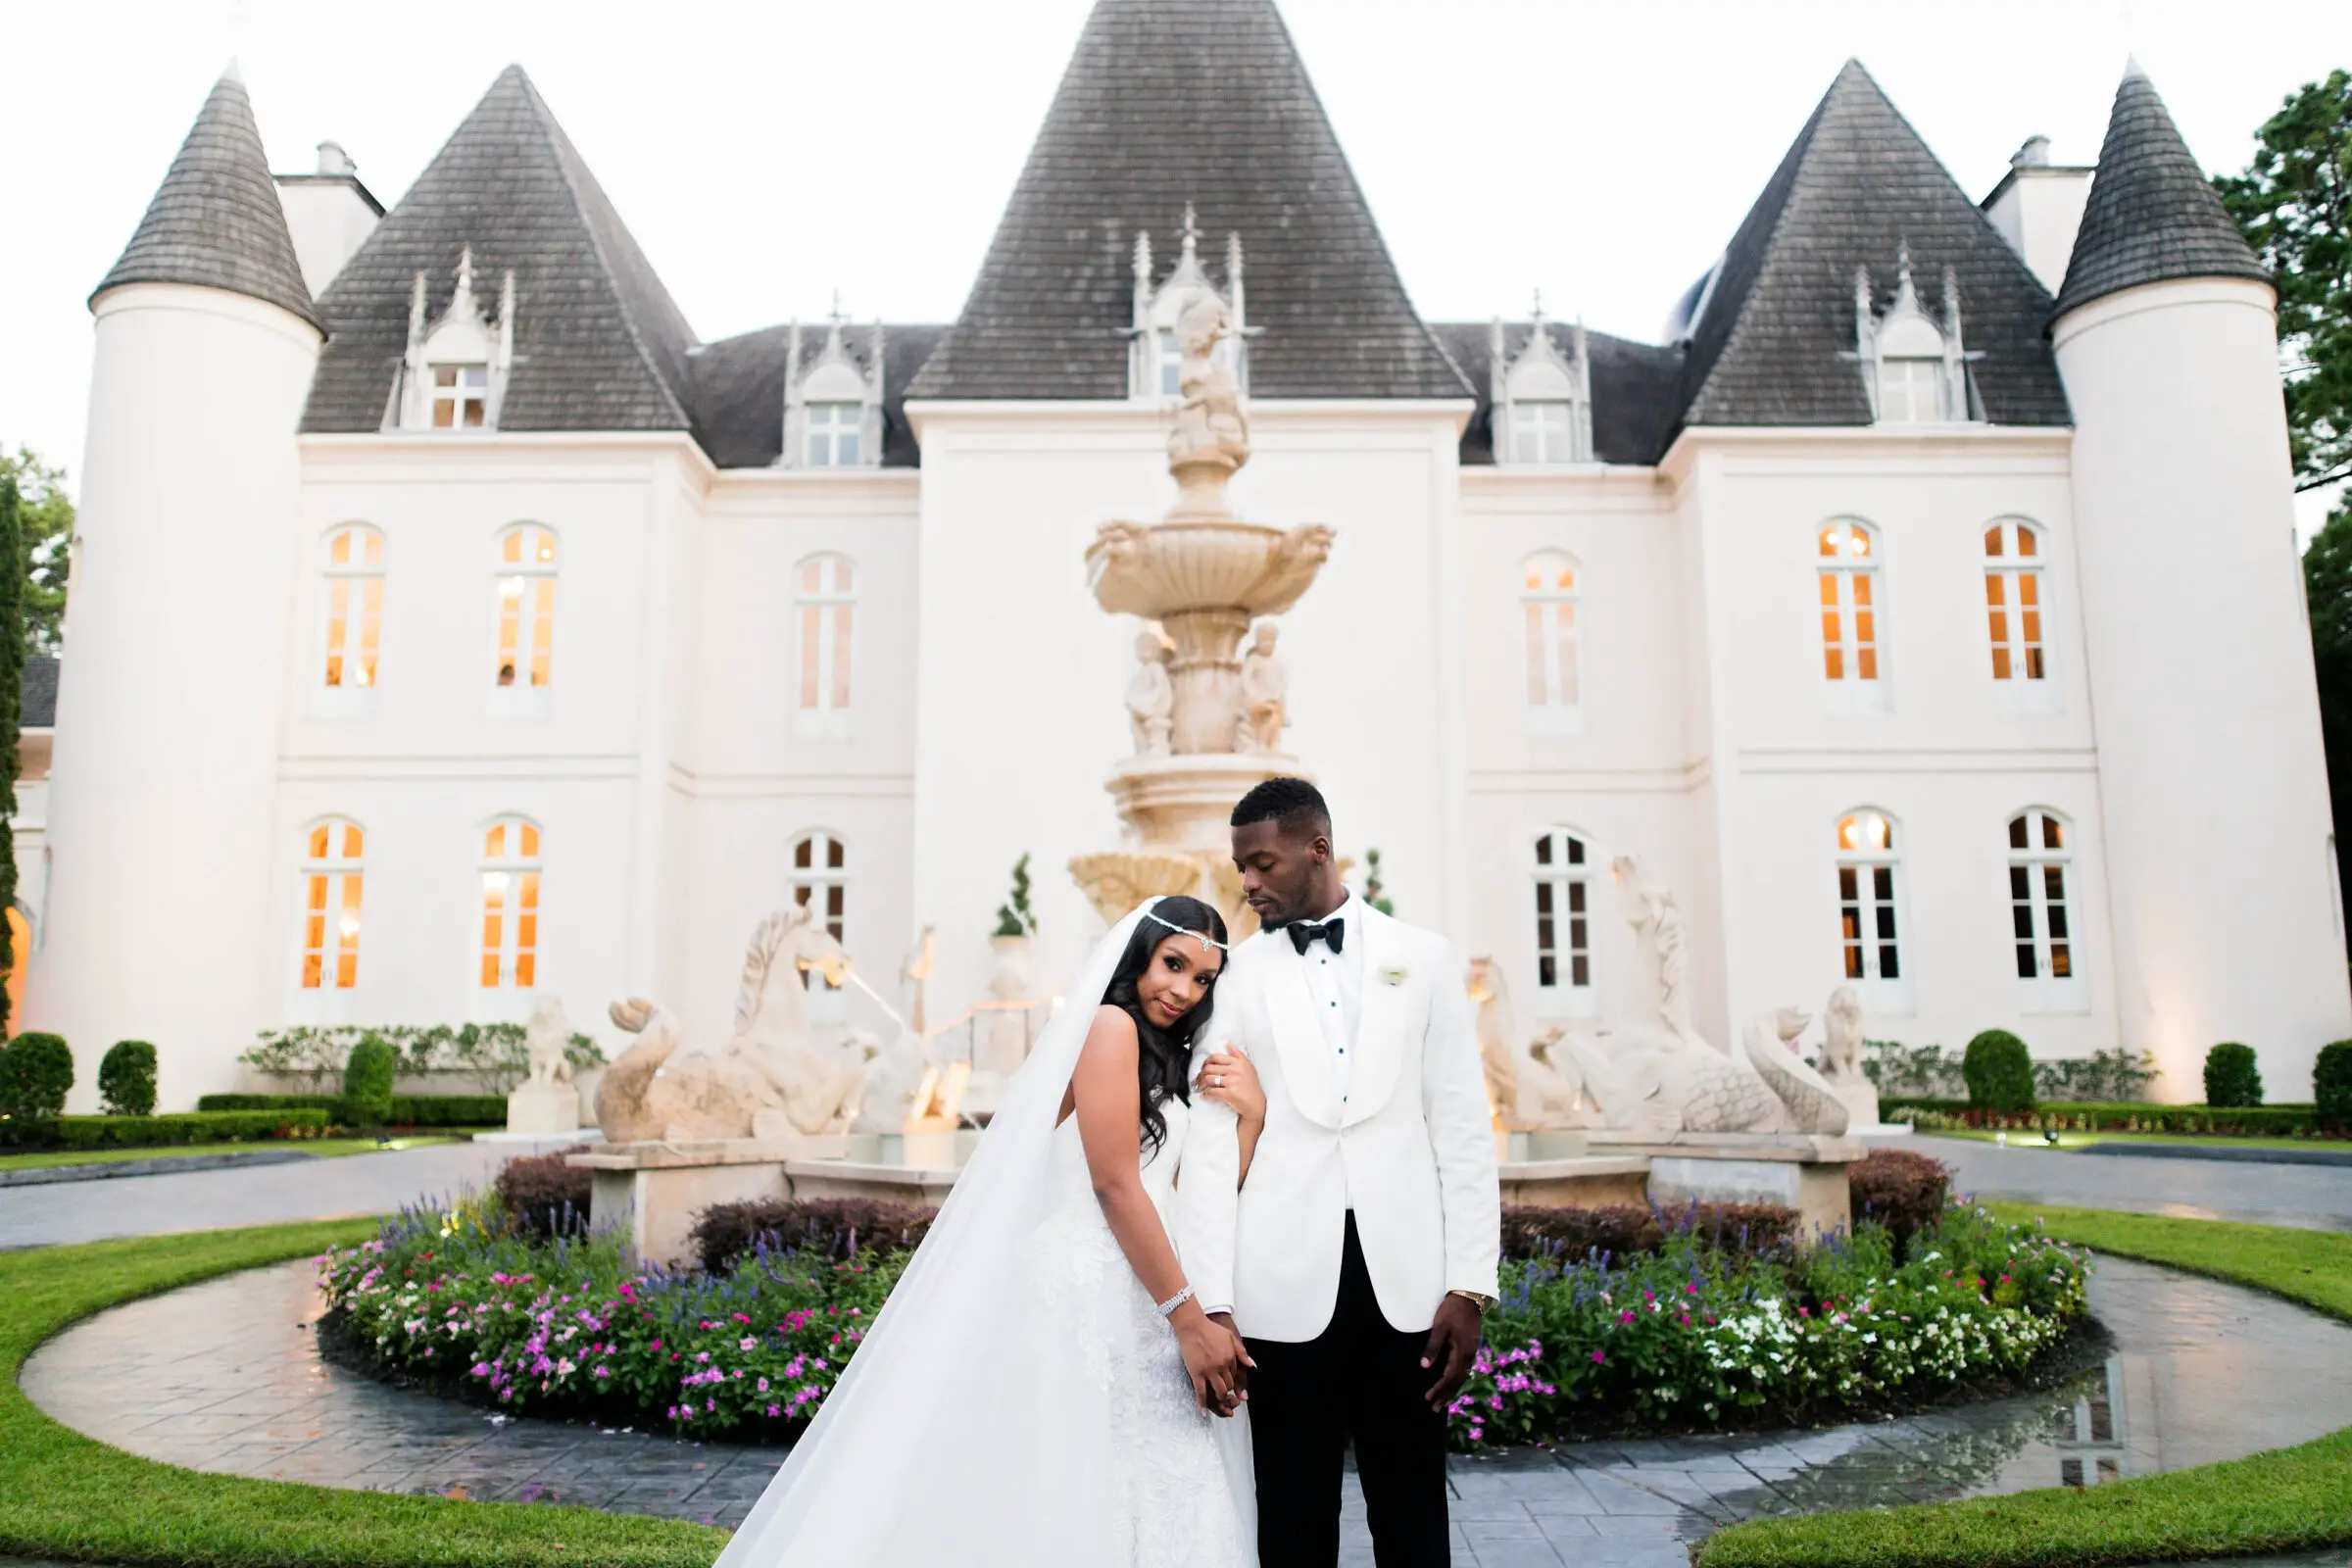 https://bellethemagazine.com/2021/02/romantic_glamorous_wedding_castle.html